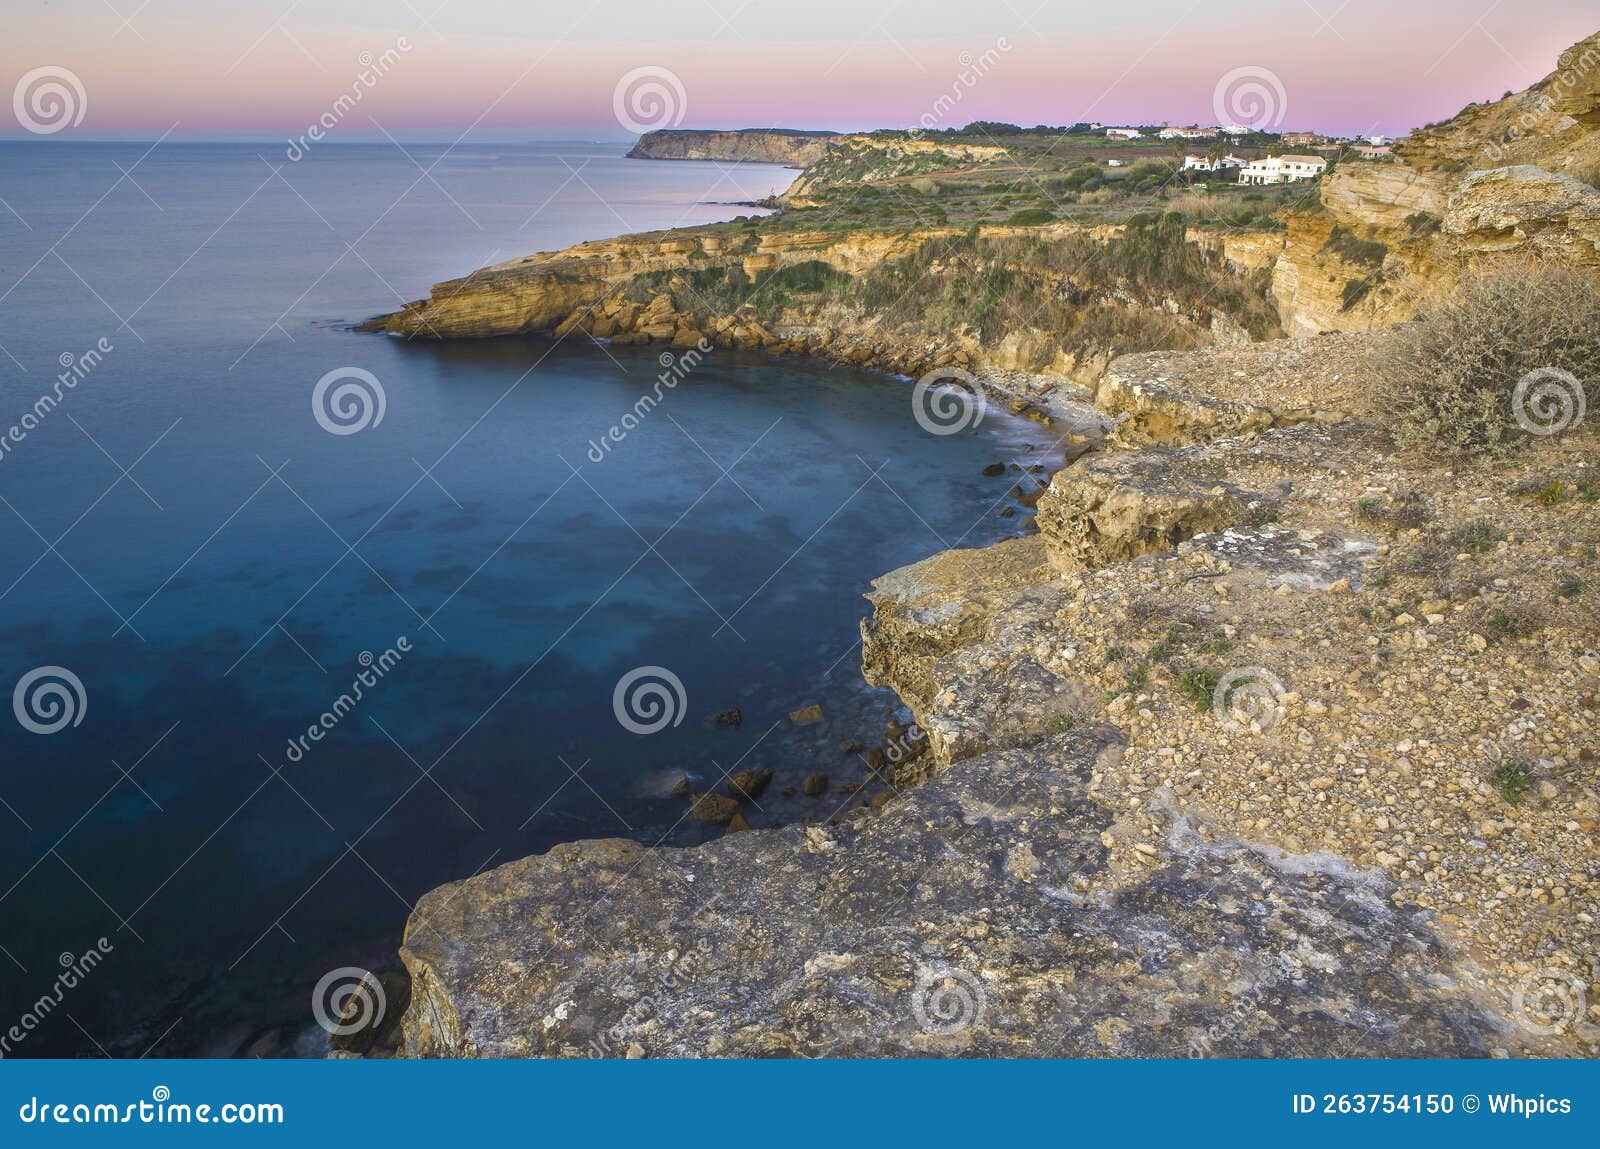 cama de vaca cliffs, faro district, portugal